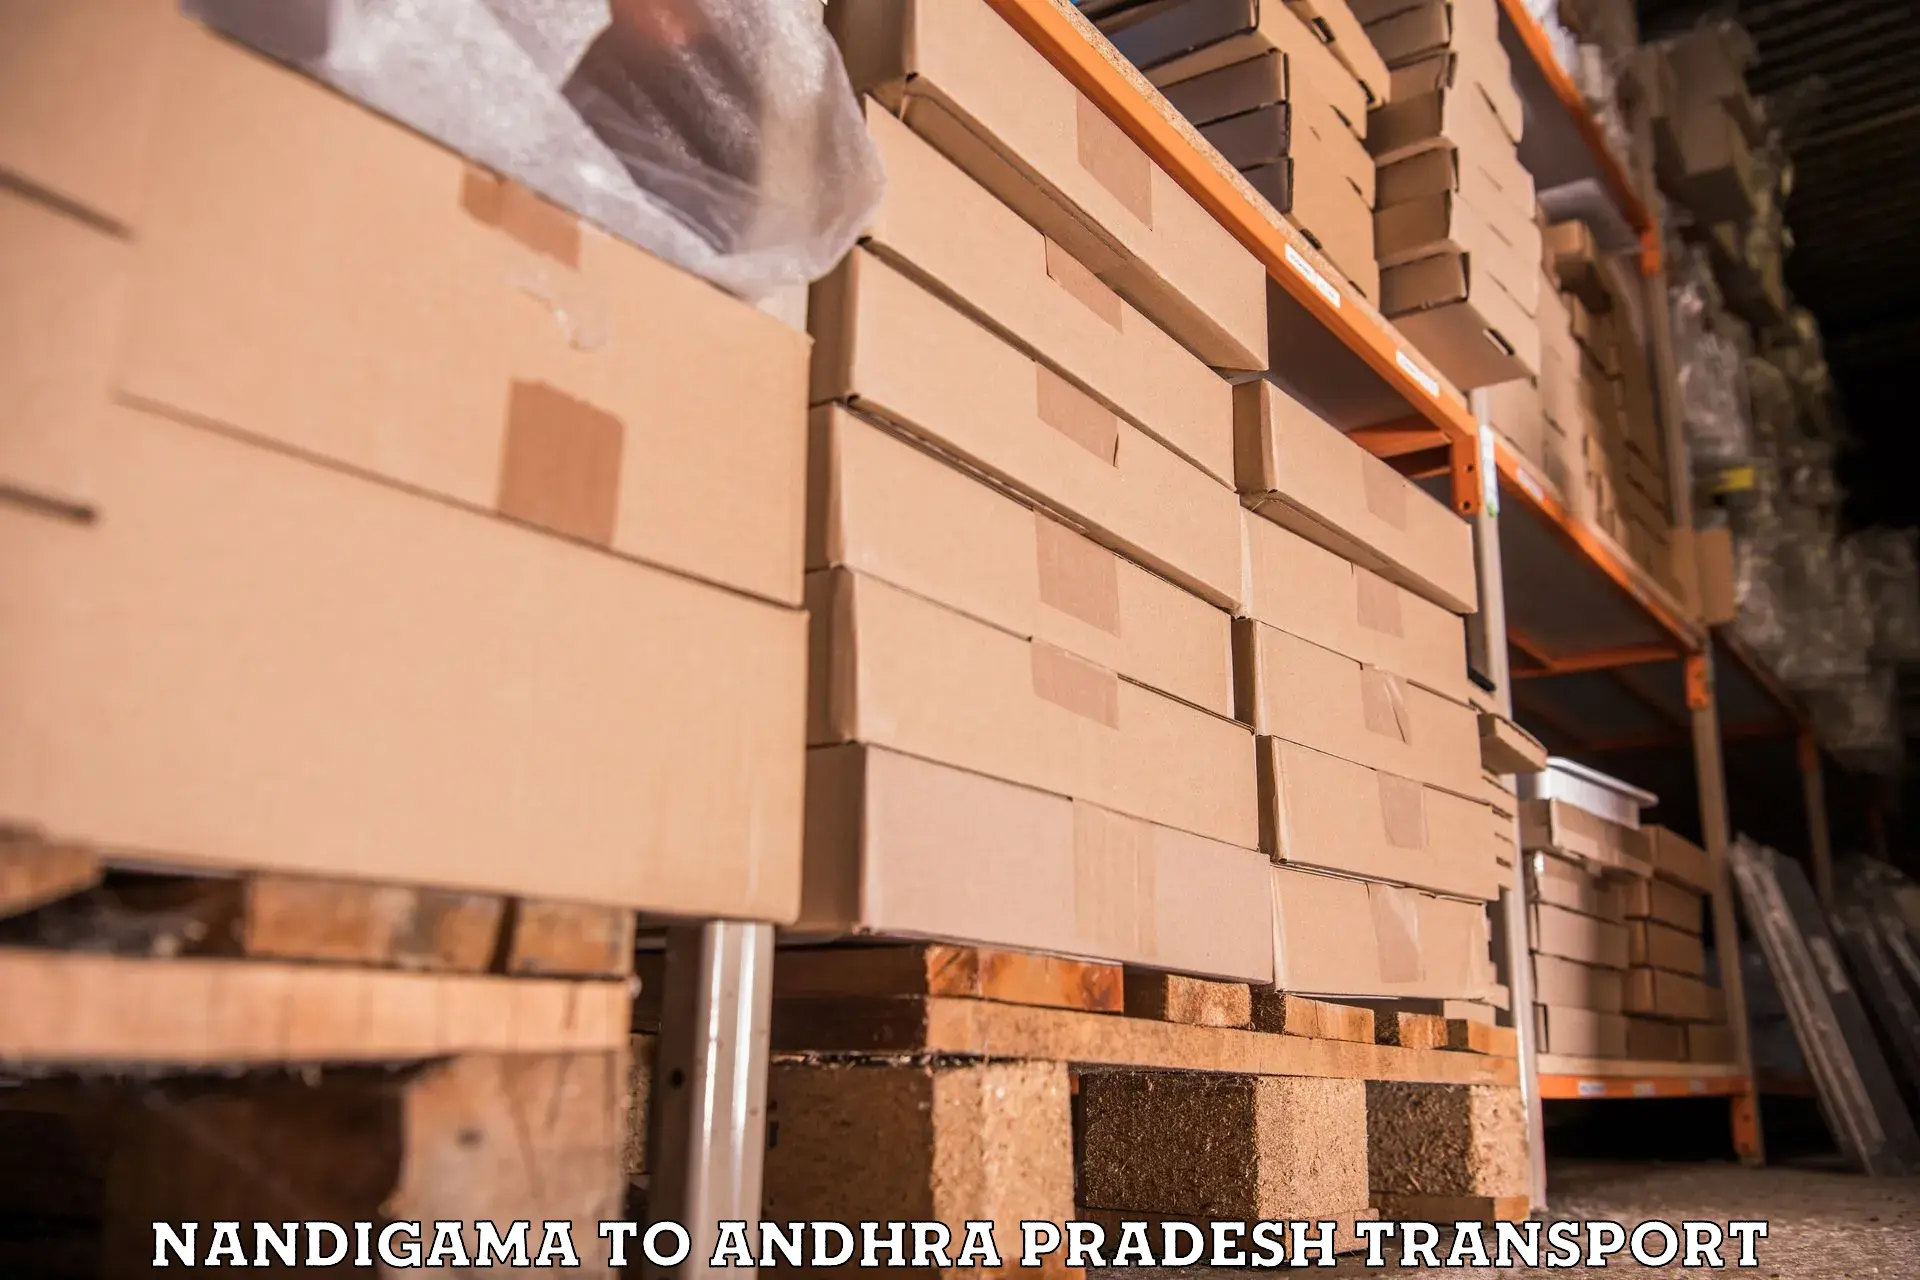 Furniture transport service Nandigama to Andhra Pradesh